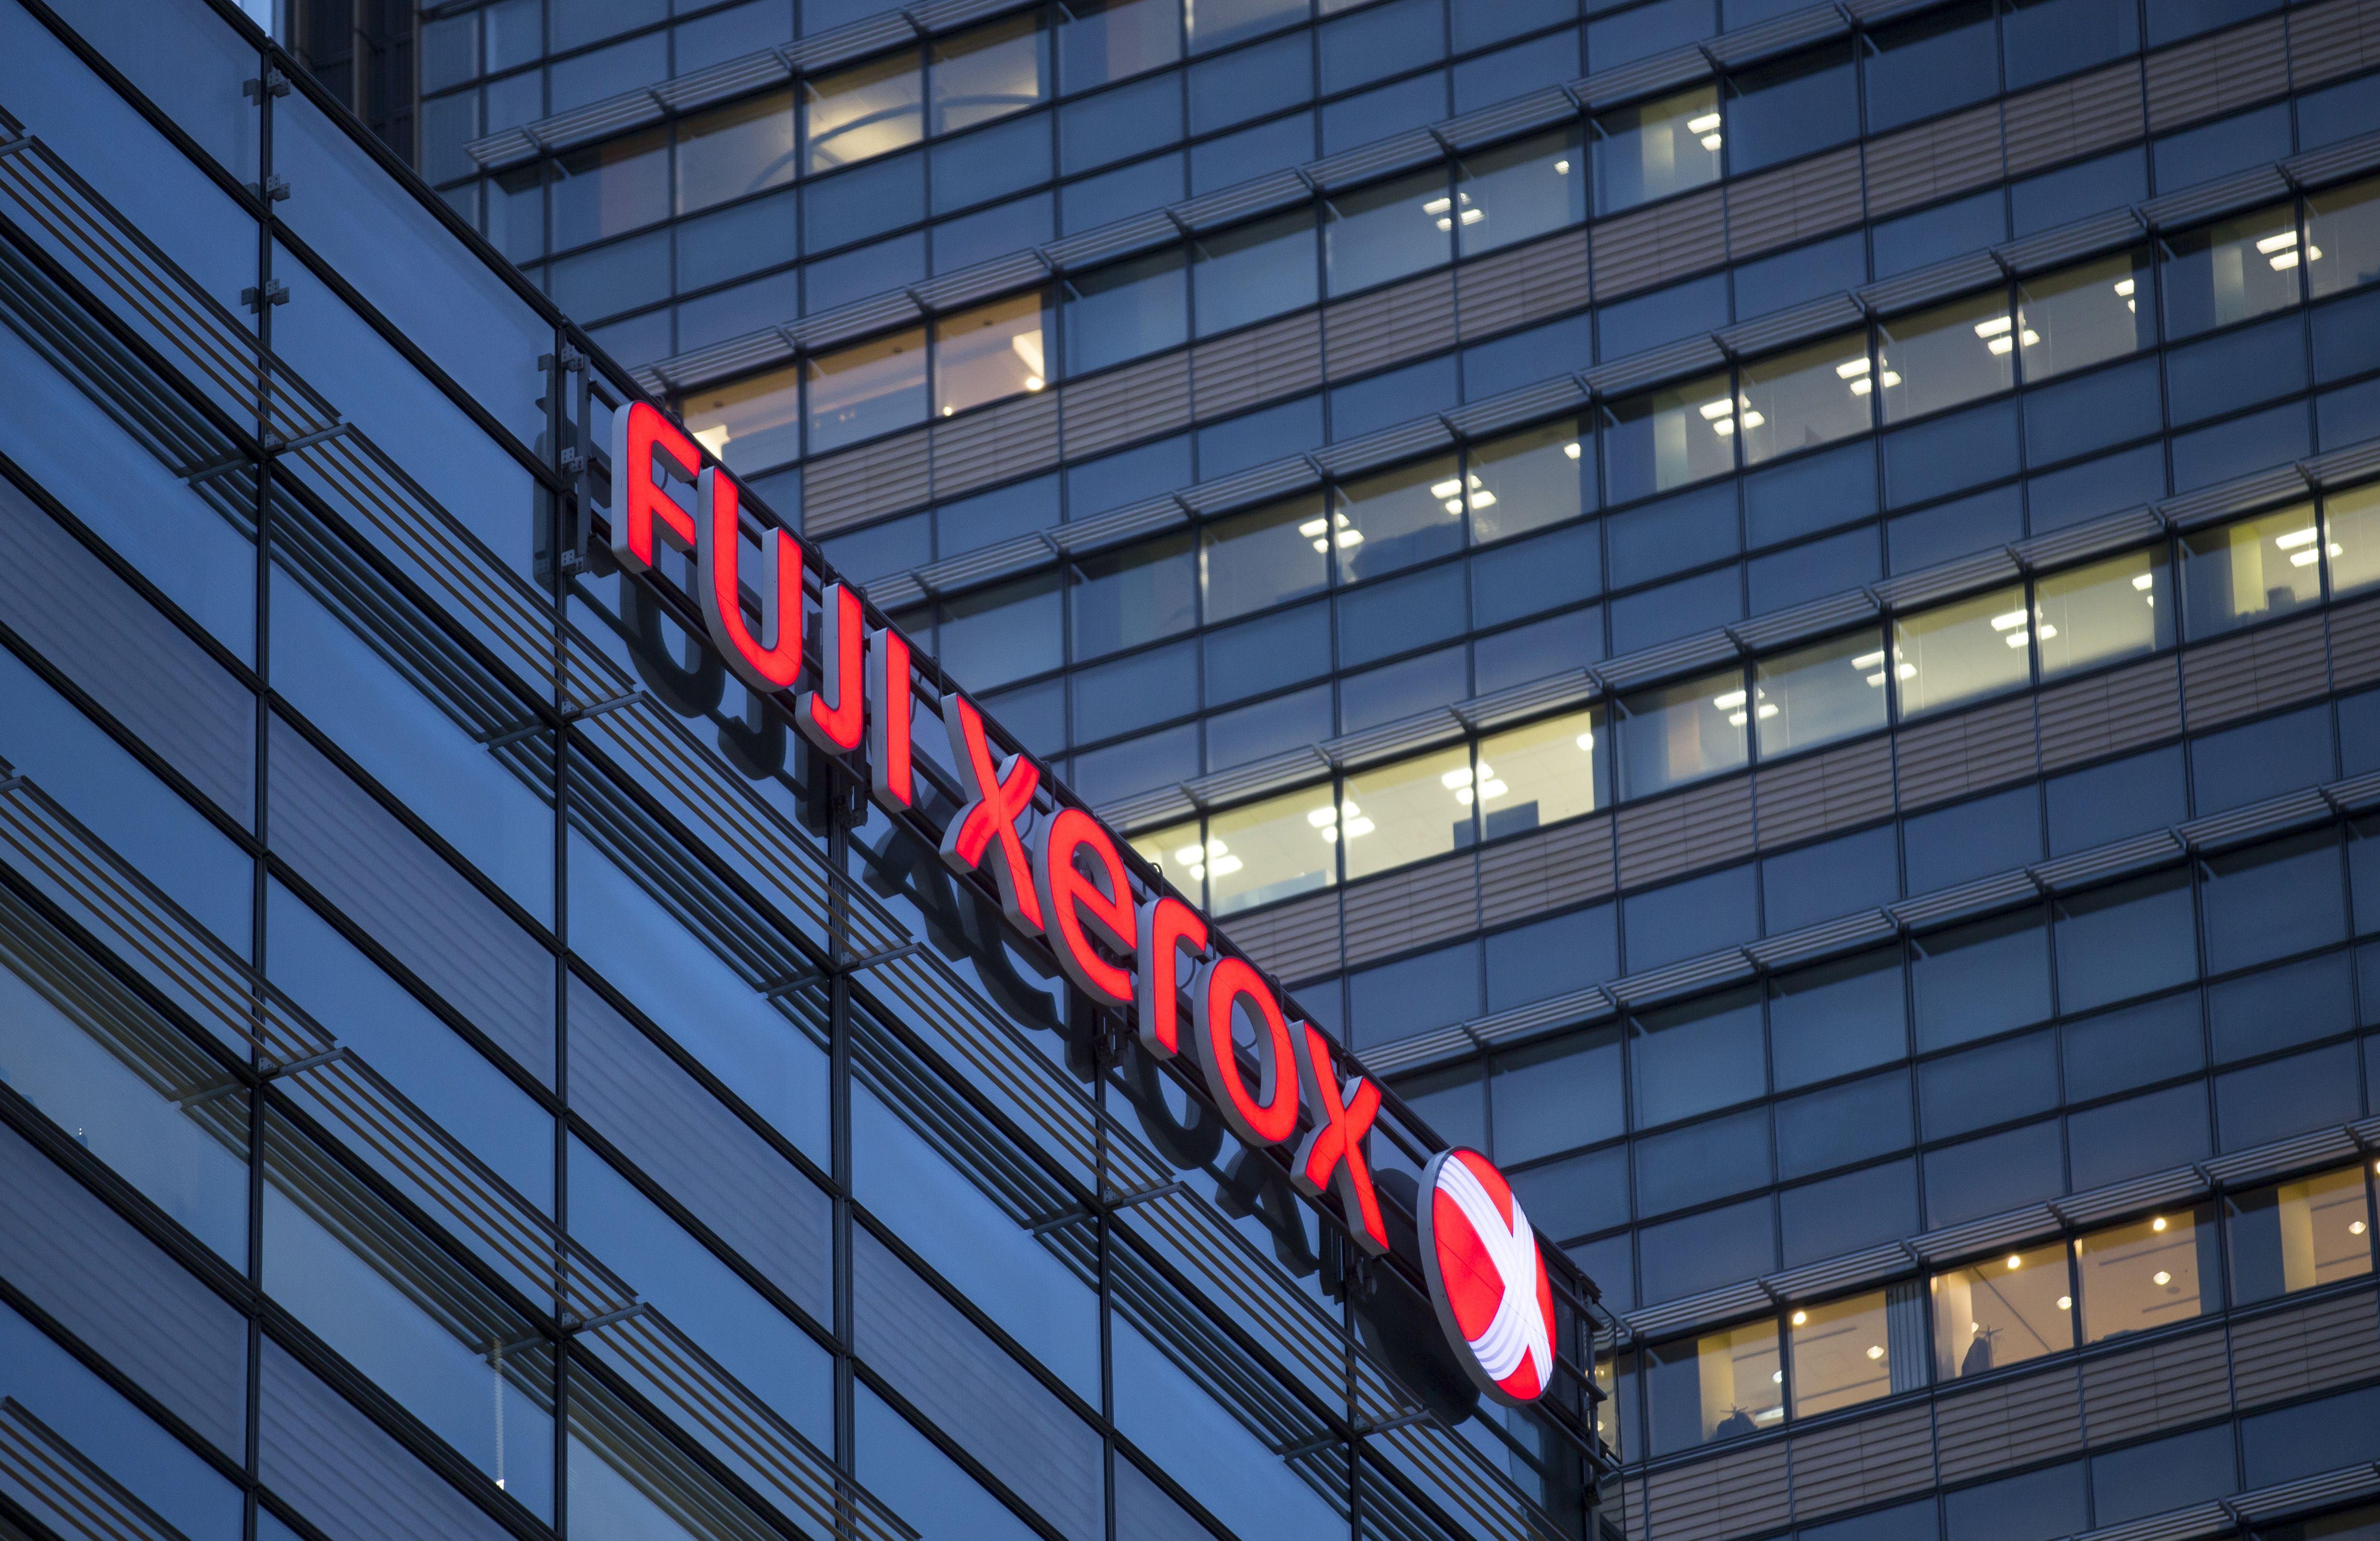 Fuji Xerox Logo - Fujifilm acquires Xerox for $6.1 billion | Ars Technica